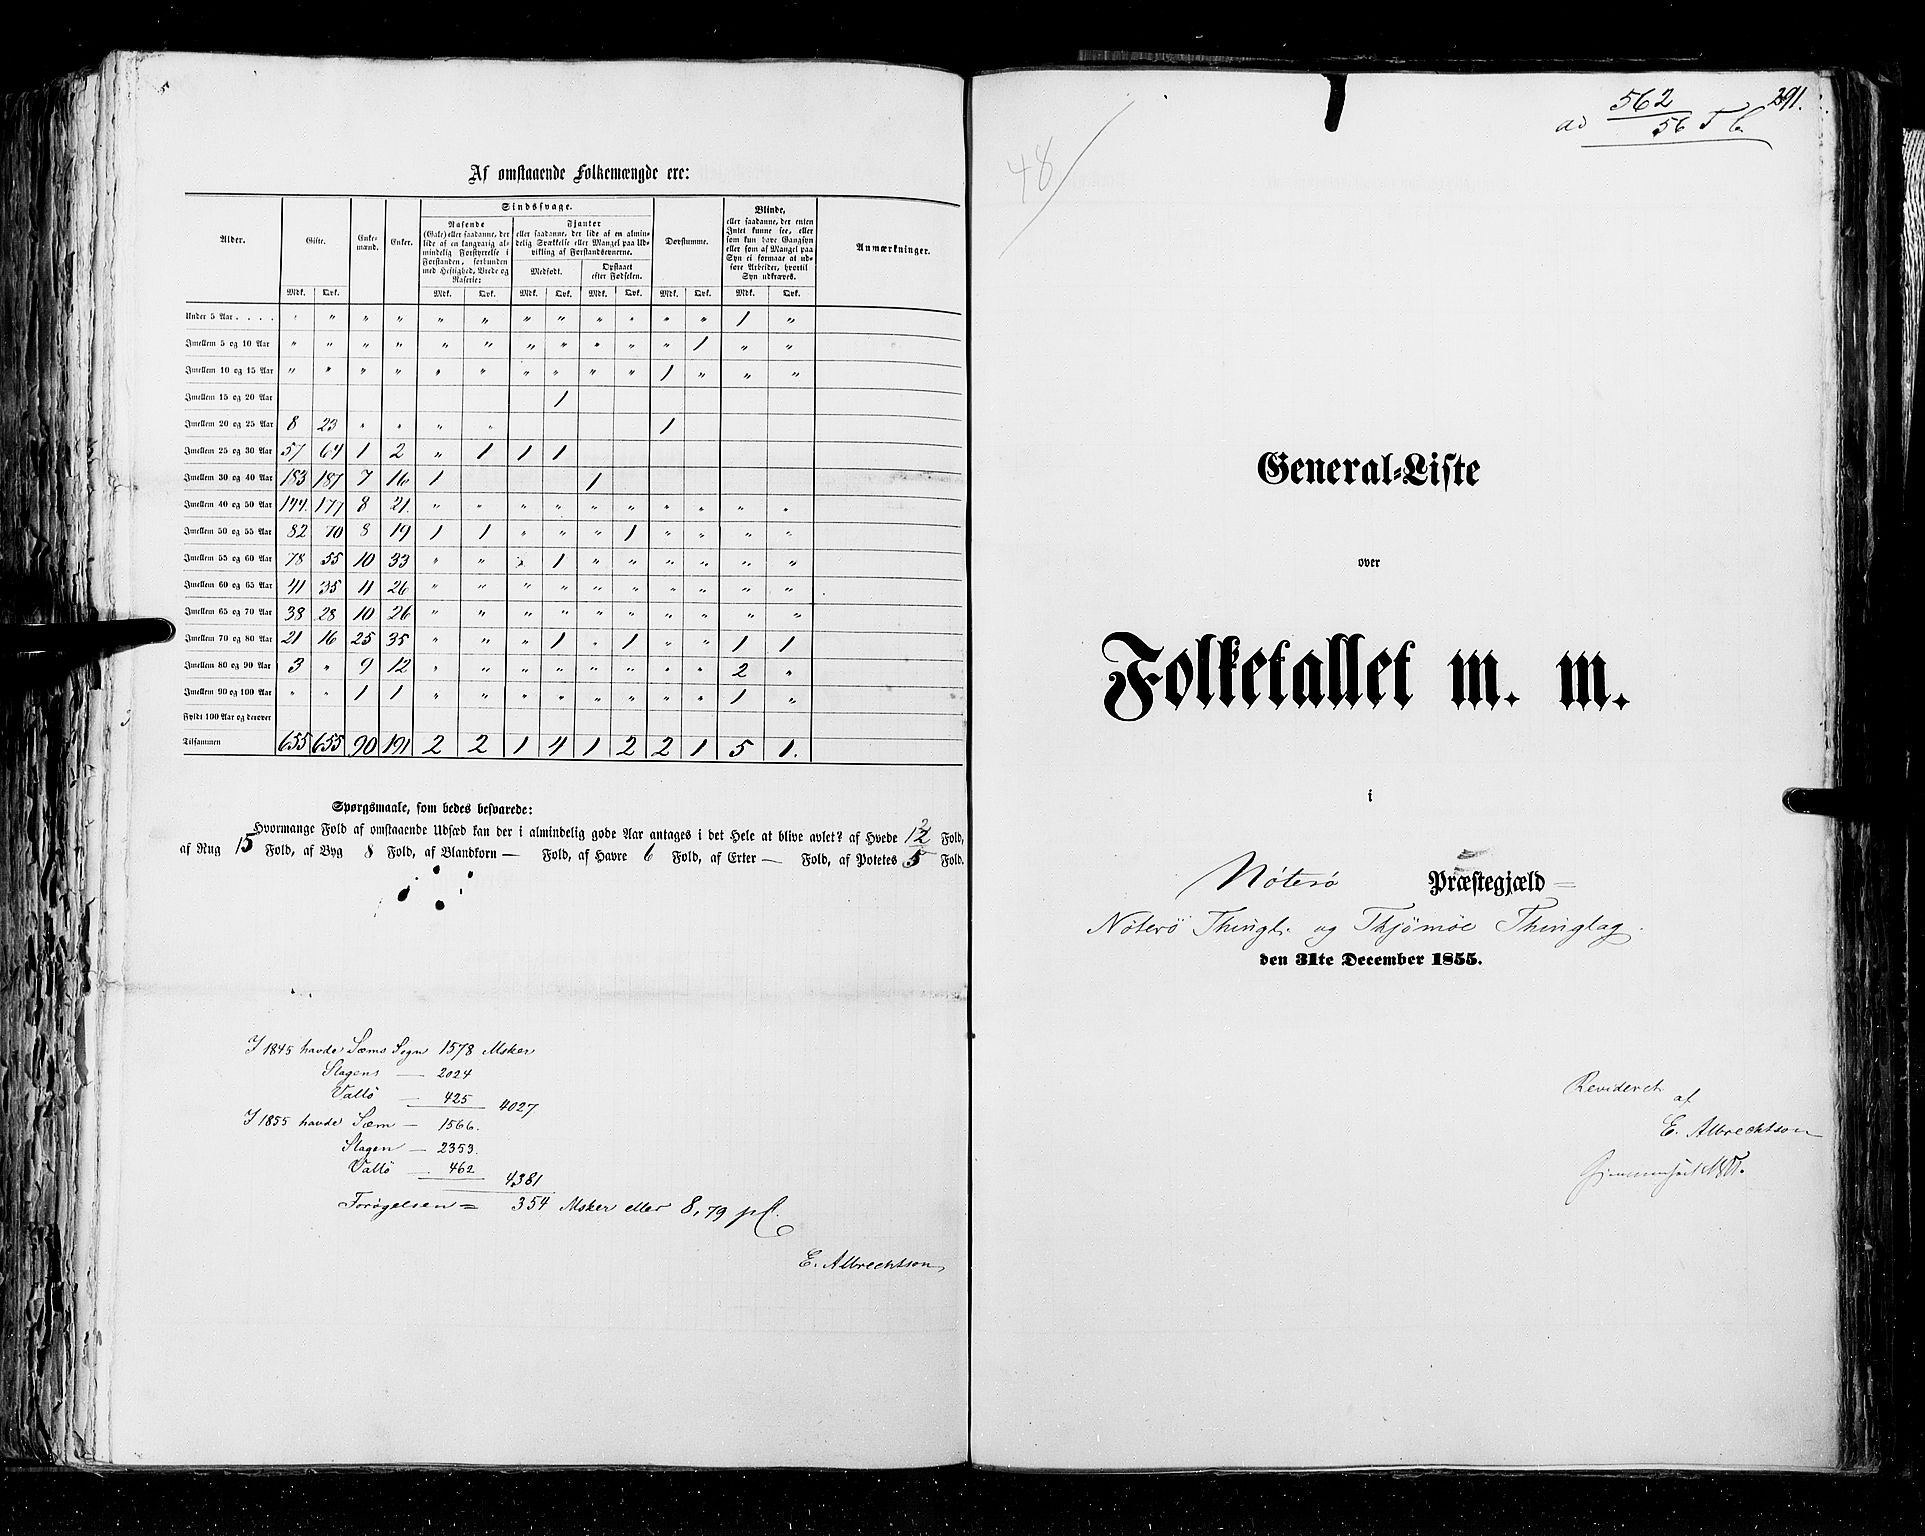 RA, Census 1855, vol. 2: Kristians amt, Buskerud amt og Jarlsberg og Larvik amt, 1855, p. 291